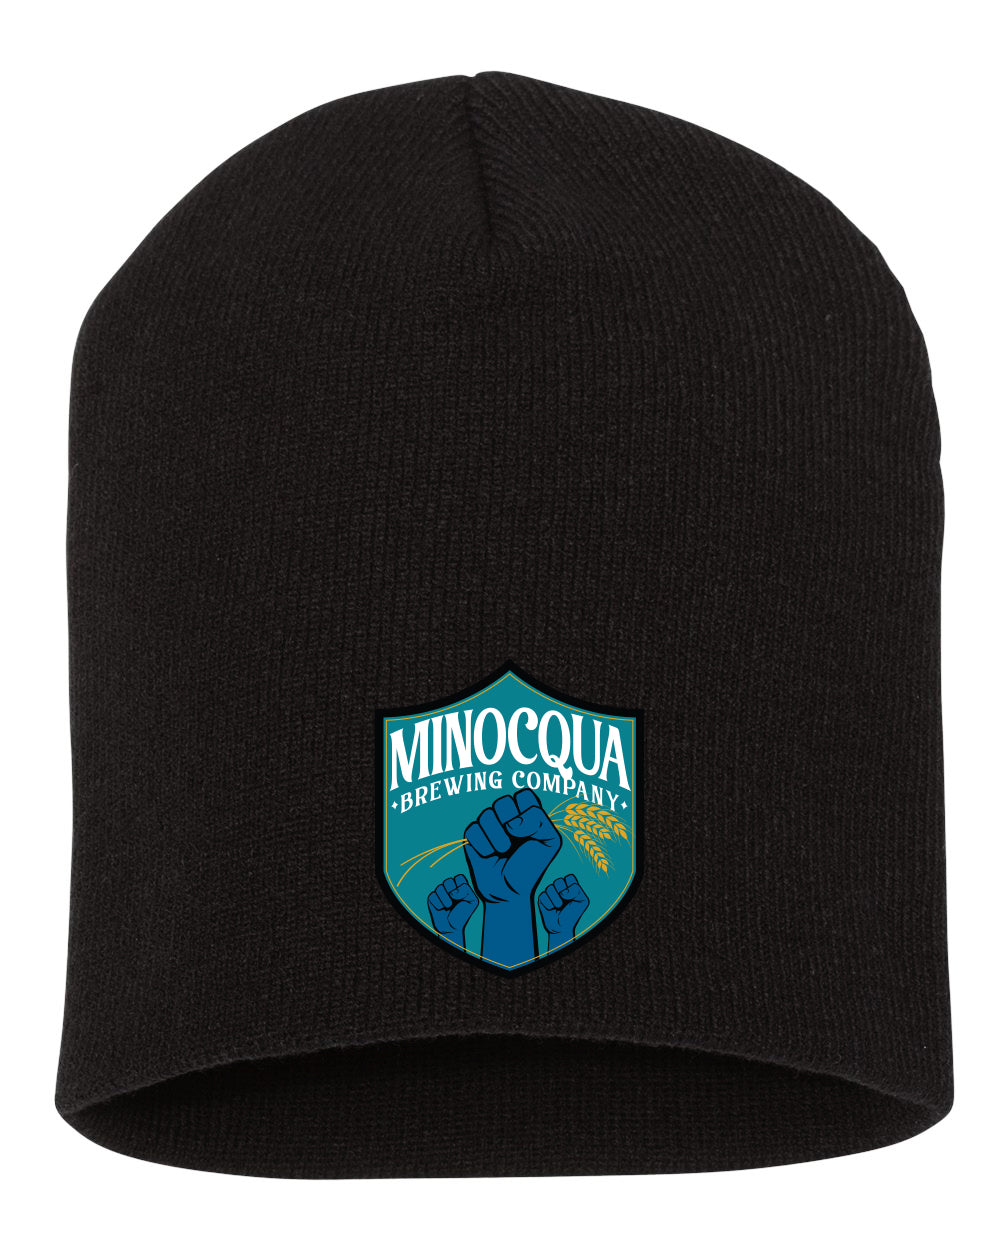 Minocqua Plain Stocking Cap